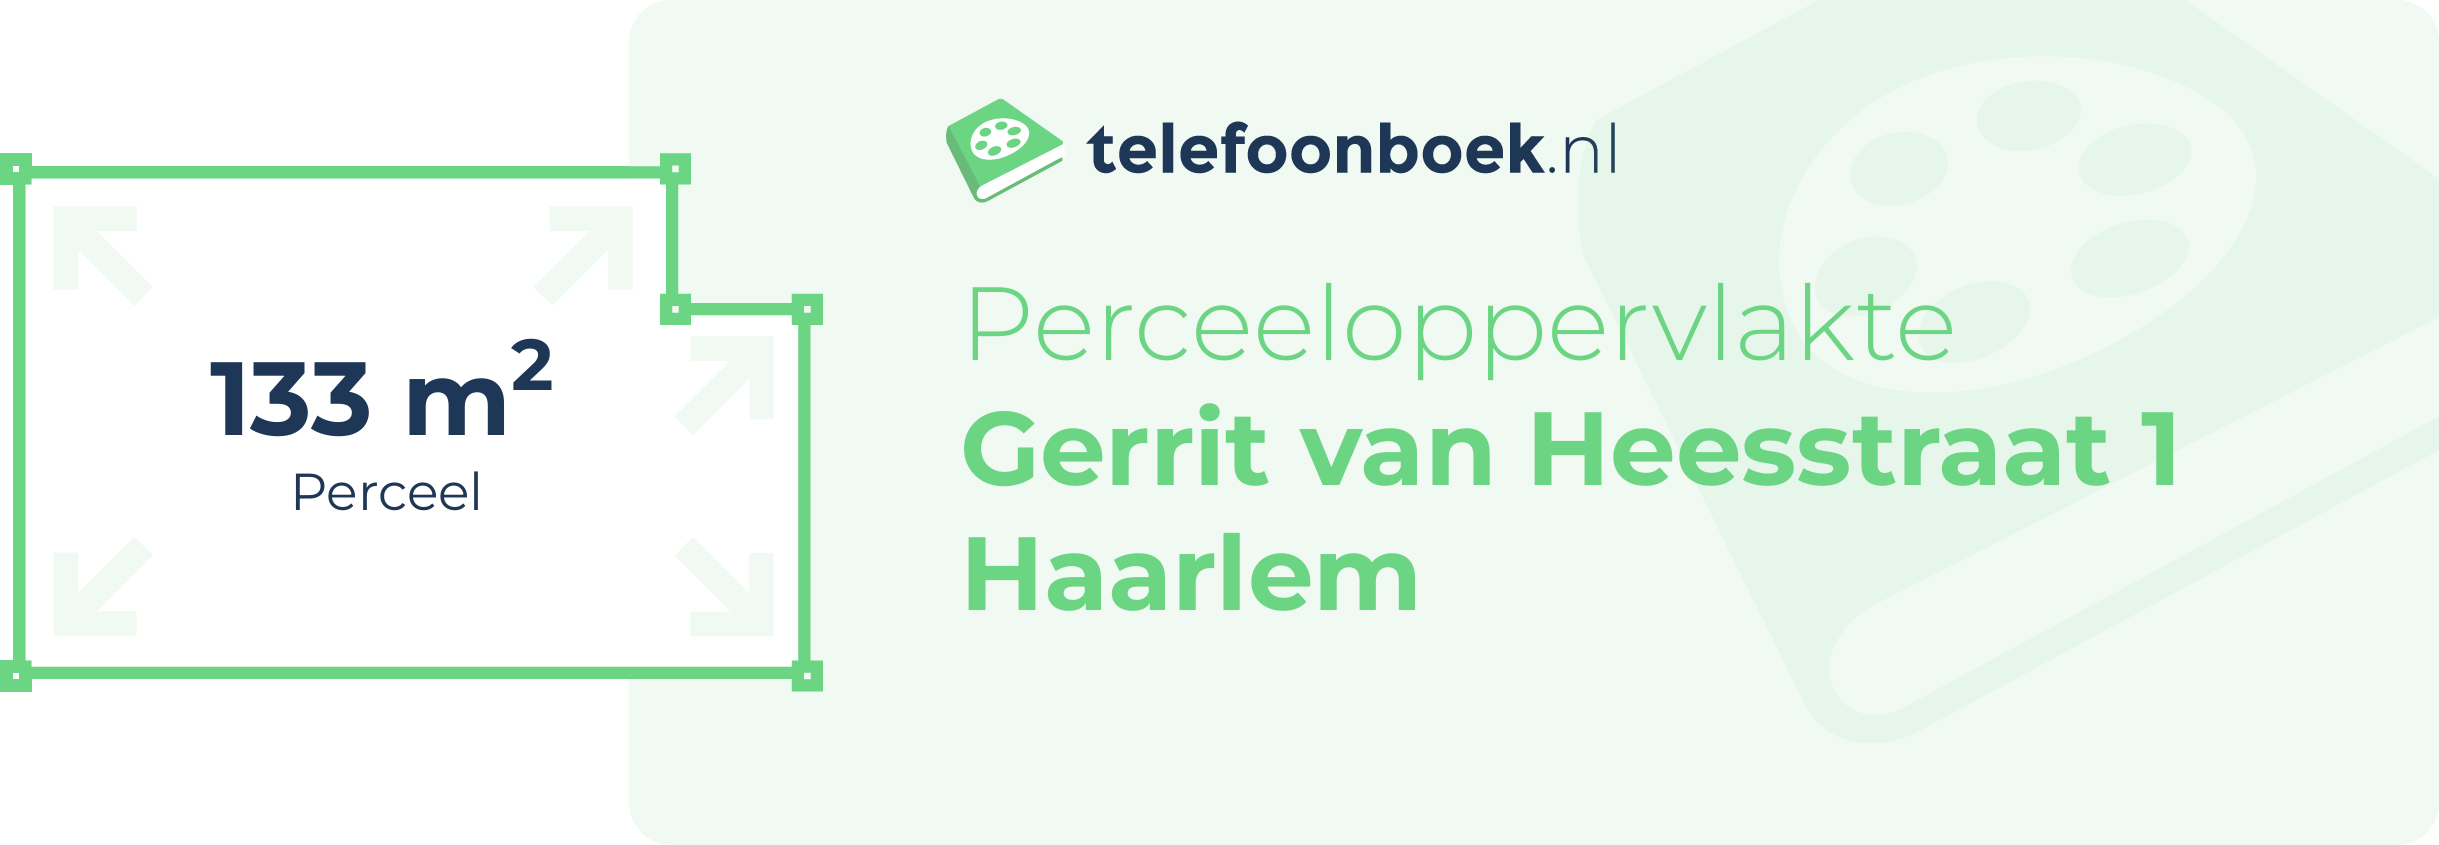 Perceeloppervlakte Gerrit Van Heesstraat 1 Haarlem